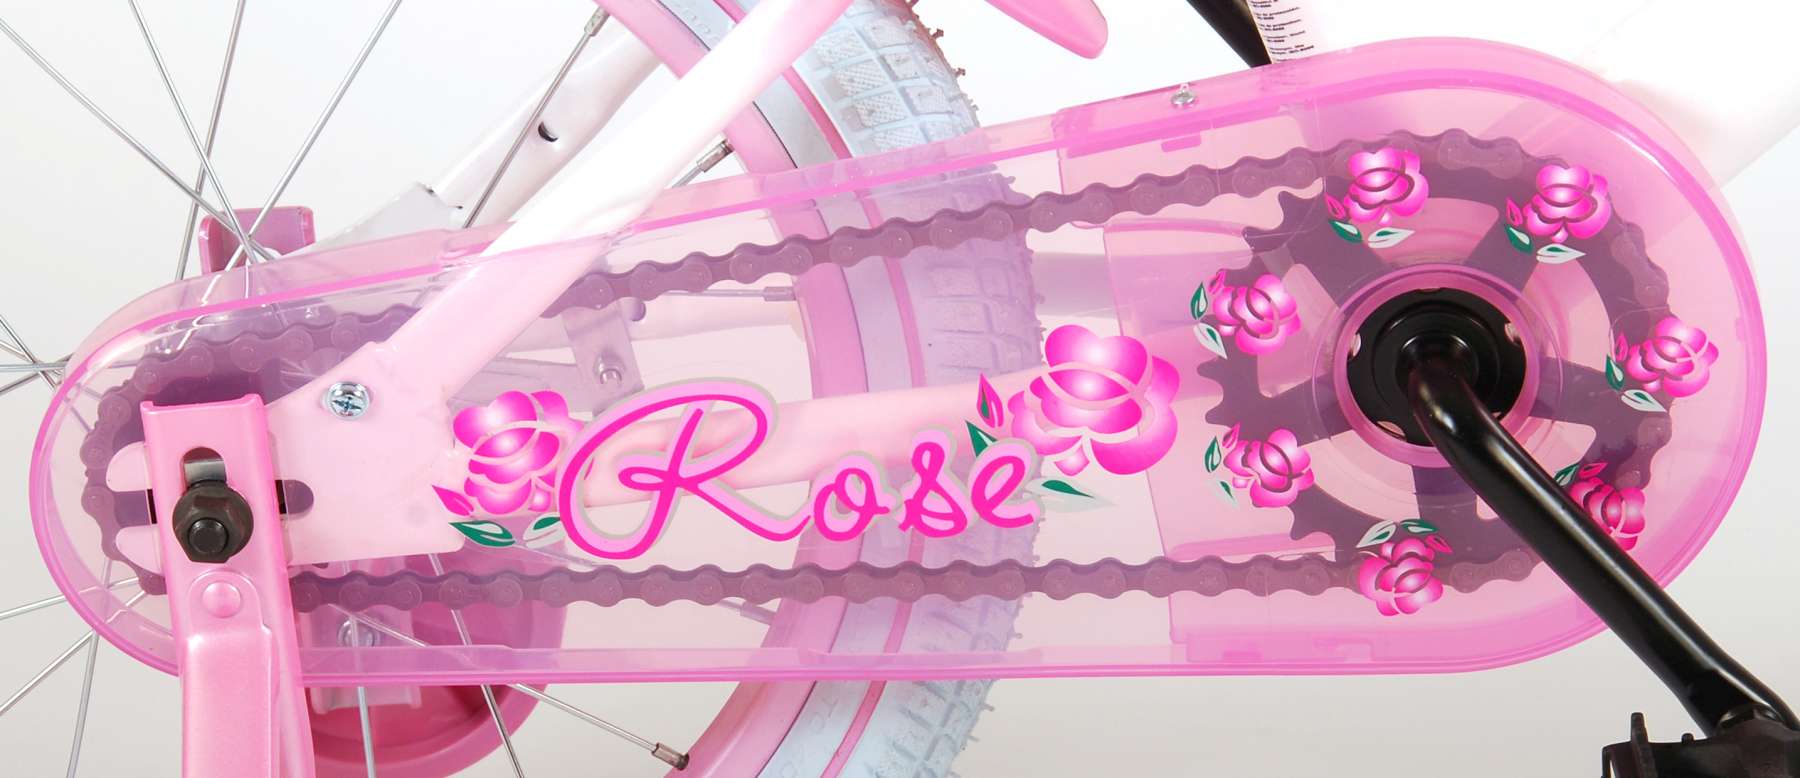 Kinderfahrrad Rose für Mädchen Fahrrad 16 Zoll Kinderrad in Pink/Weiß